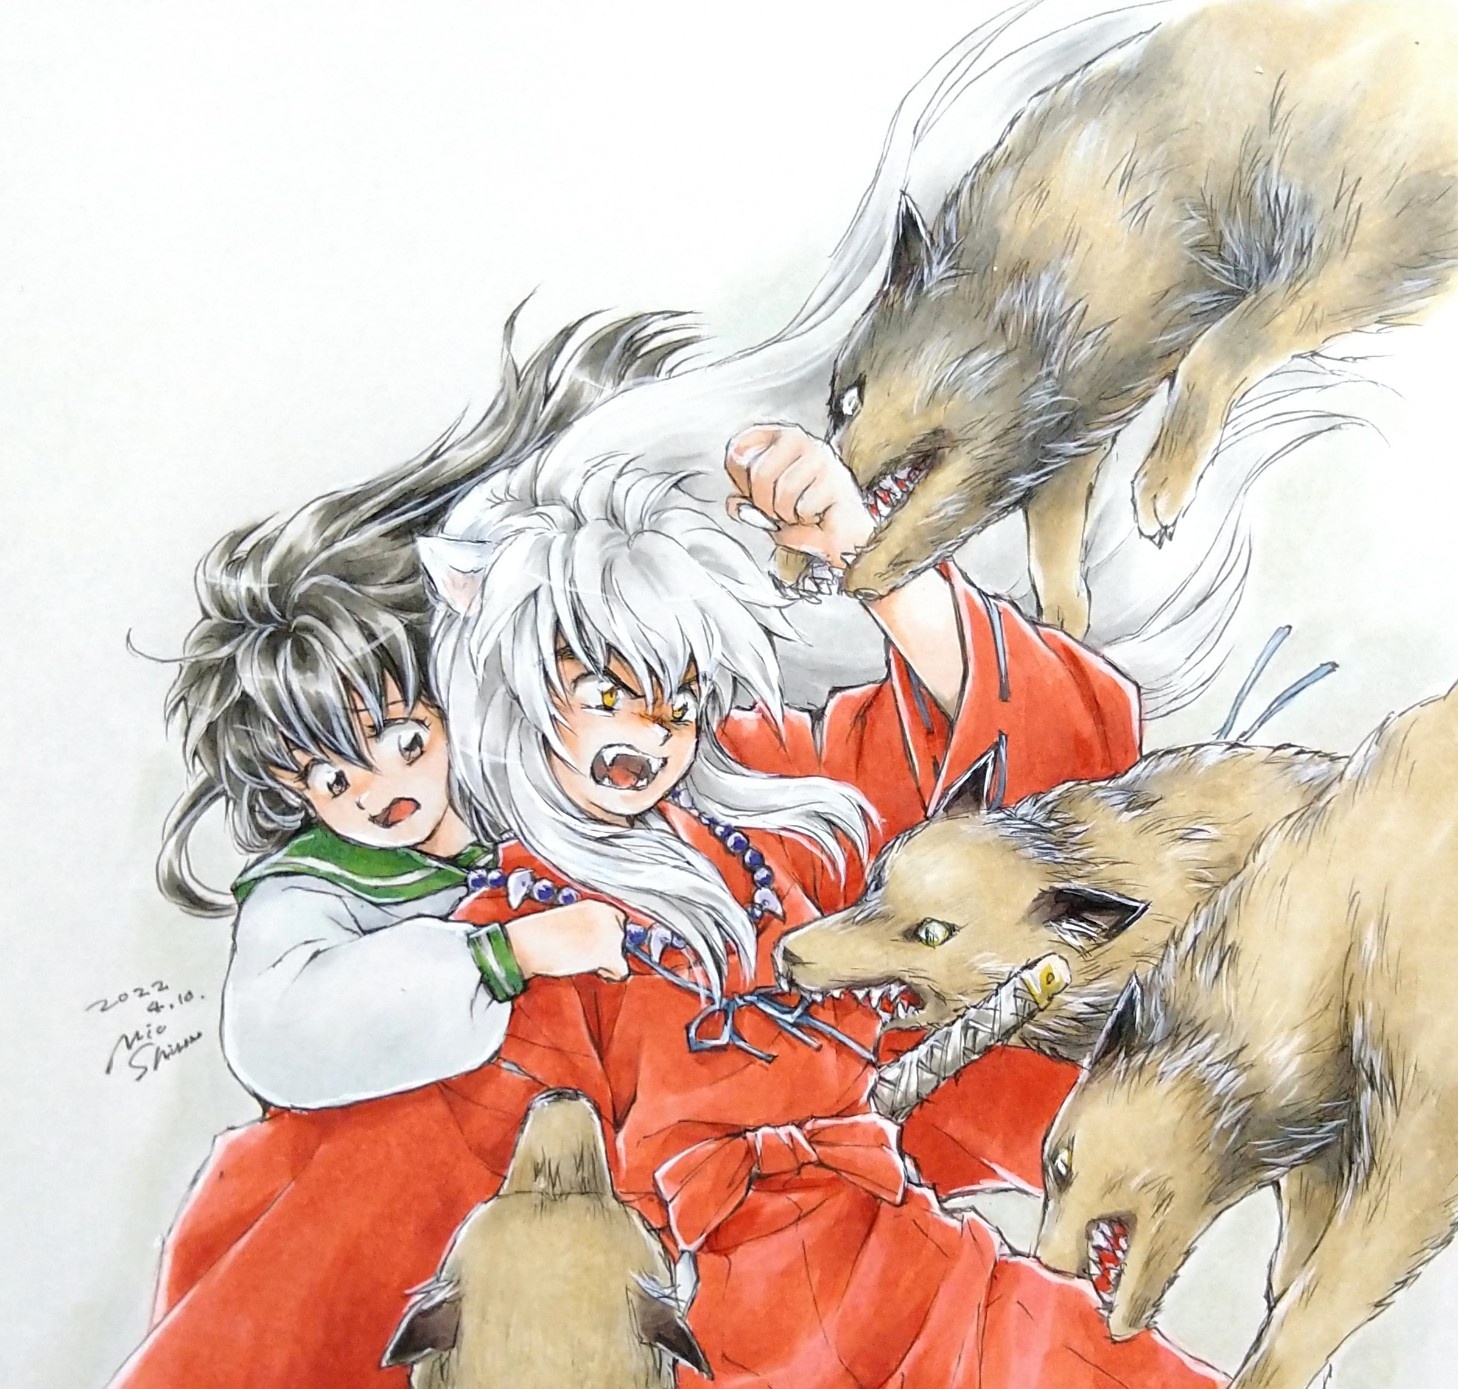 殺生丸様~!♡ — The way Sesshomaru touches his puppies faces is so